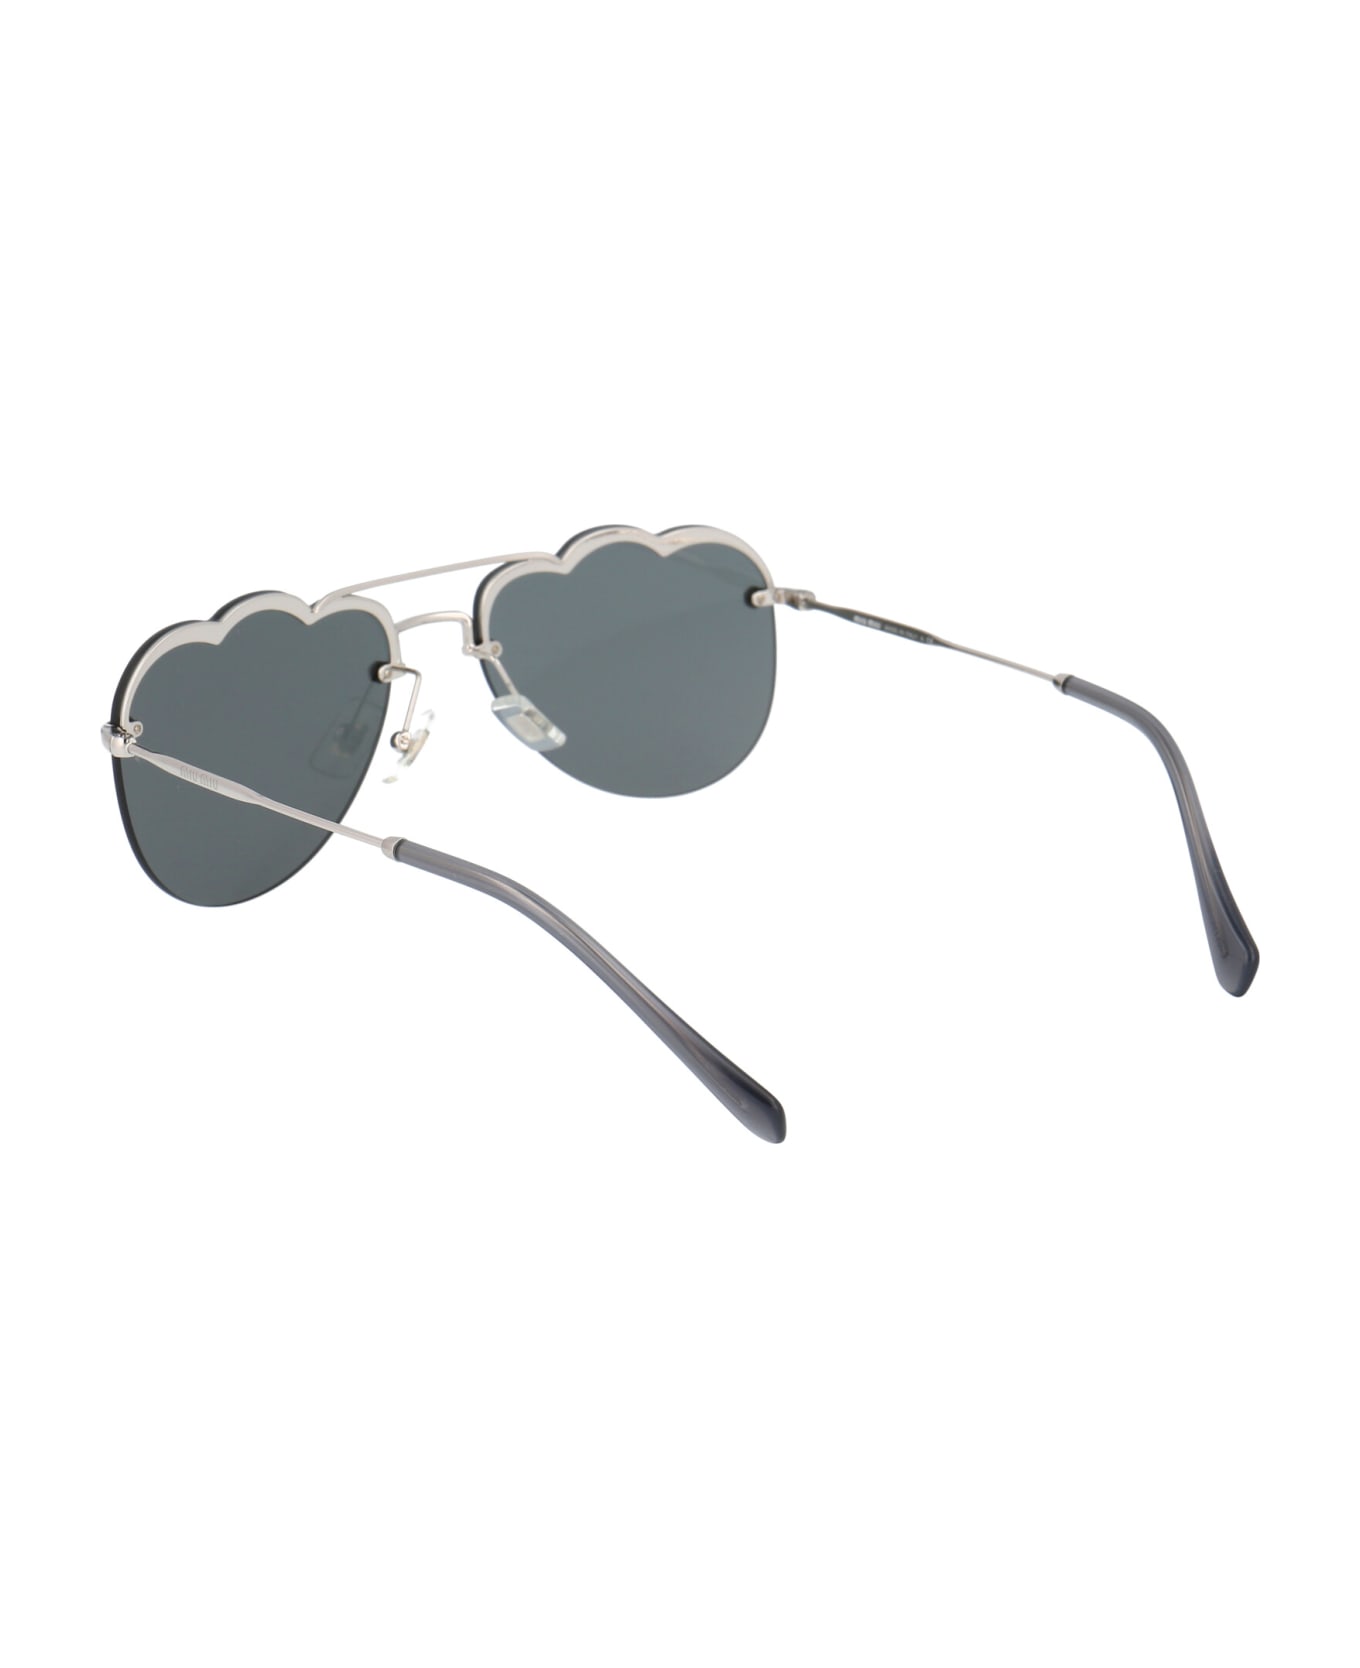 Miu Miu Eyewear 0mu 56us Sunglasses - 1BC175 SILVER サングラス